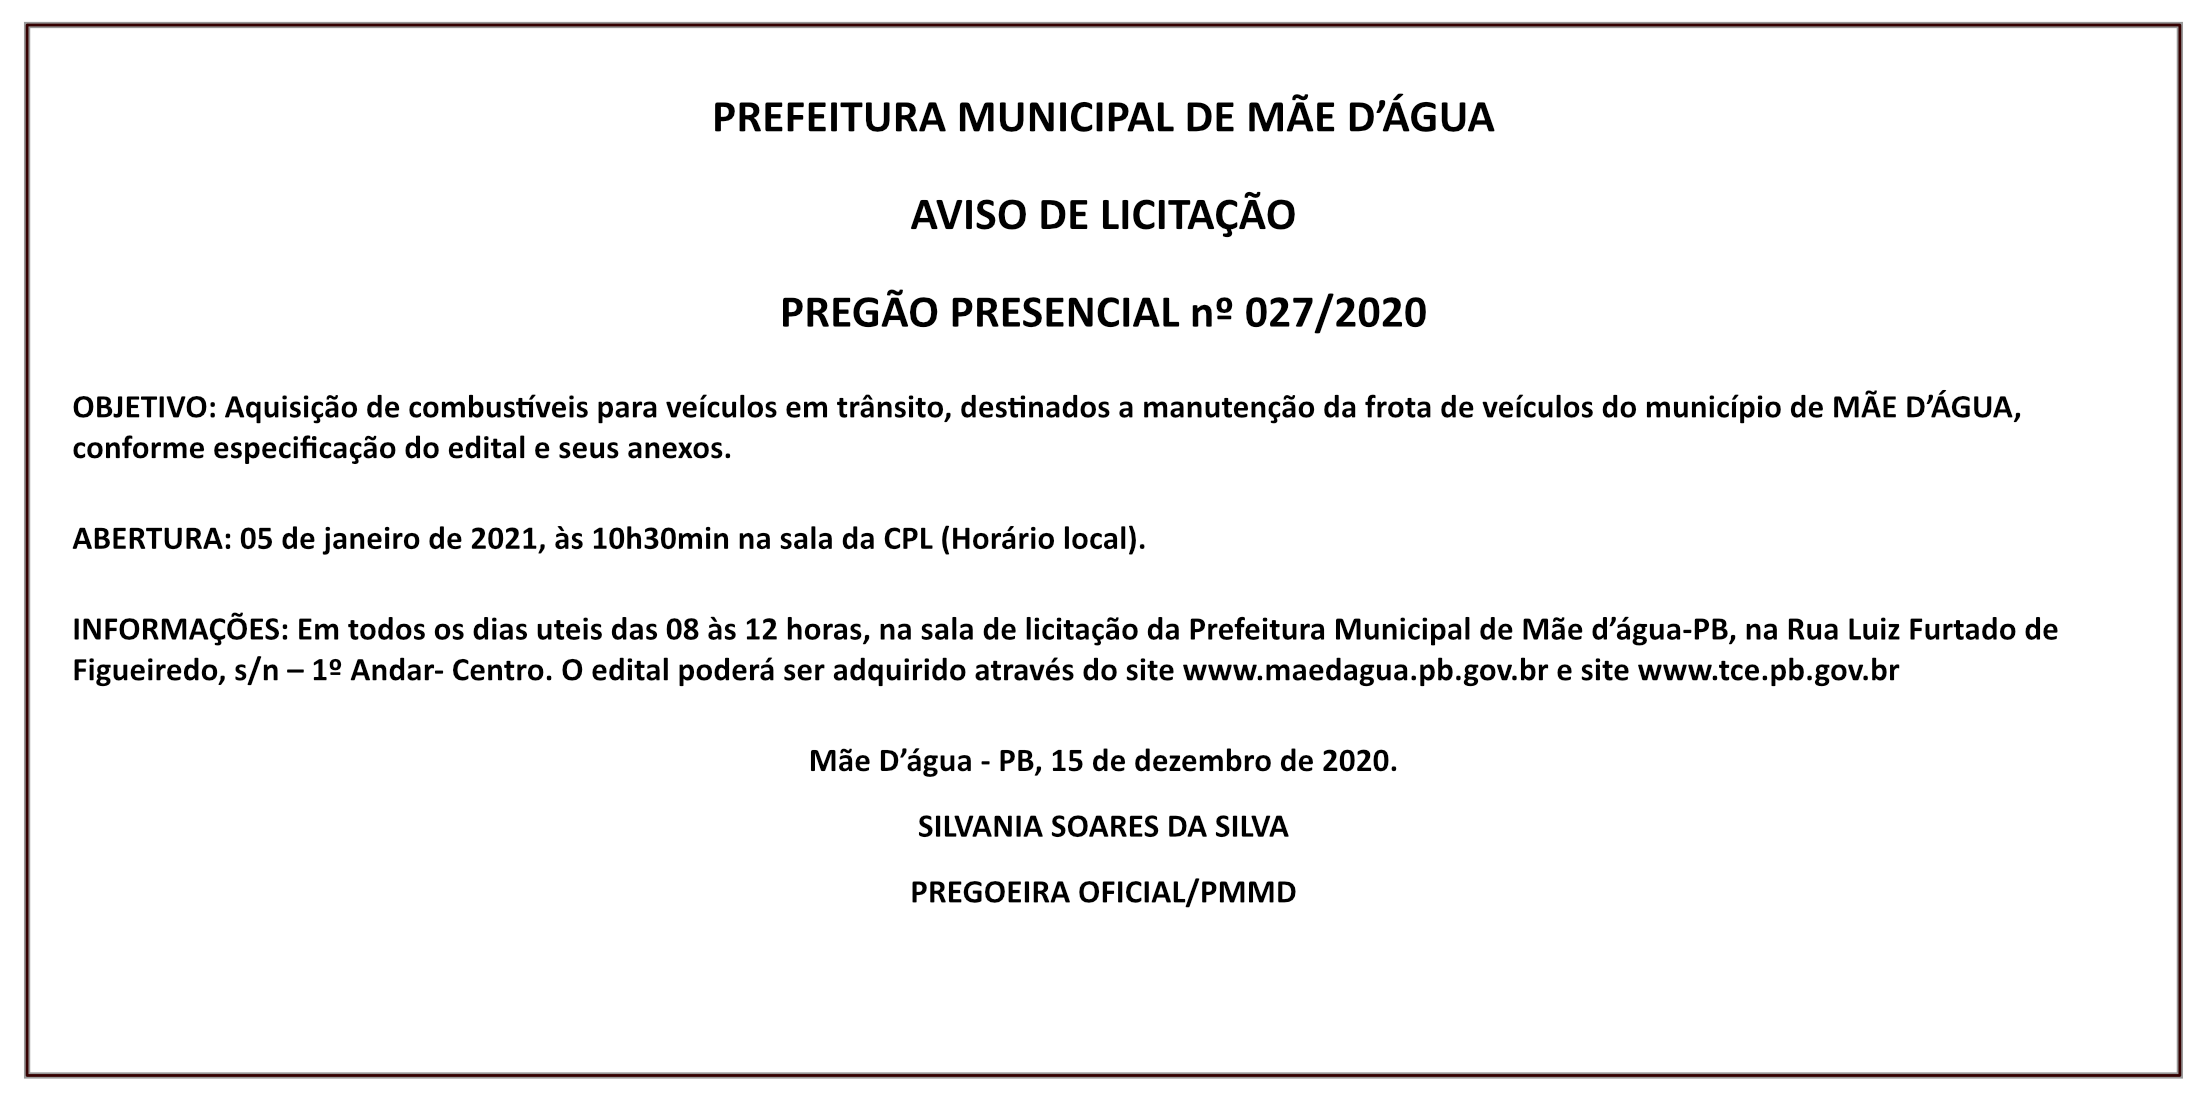 PREFEITURA MUNICIPAL DE MÃE D’ÁGUA – AVISO DE LICITAÇÃO – PREGÃO PRESENCIAL Nº 027/2020